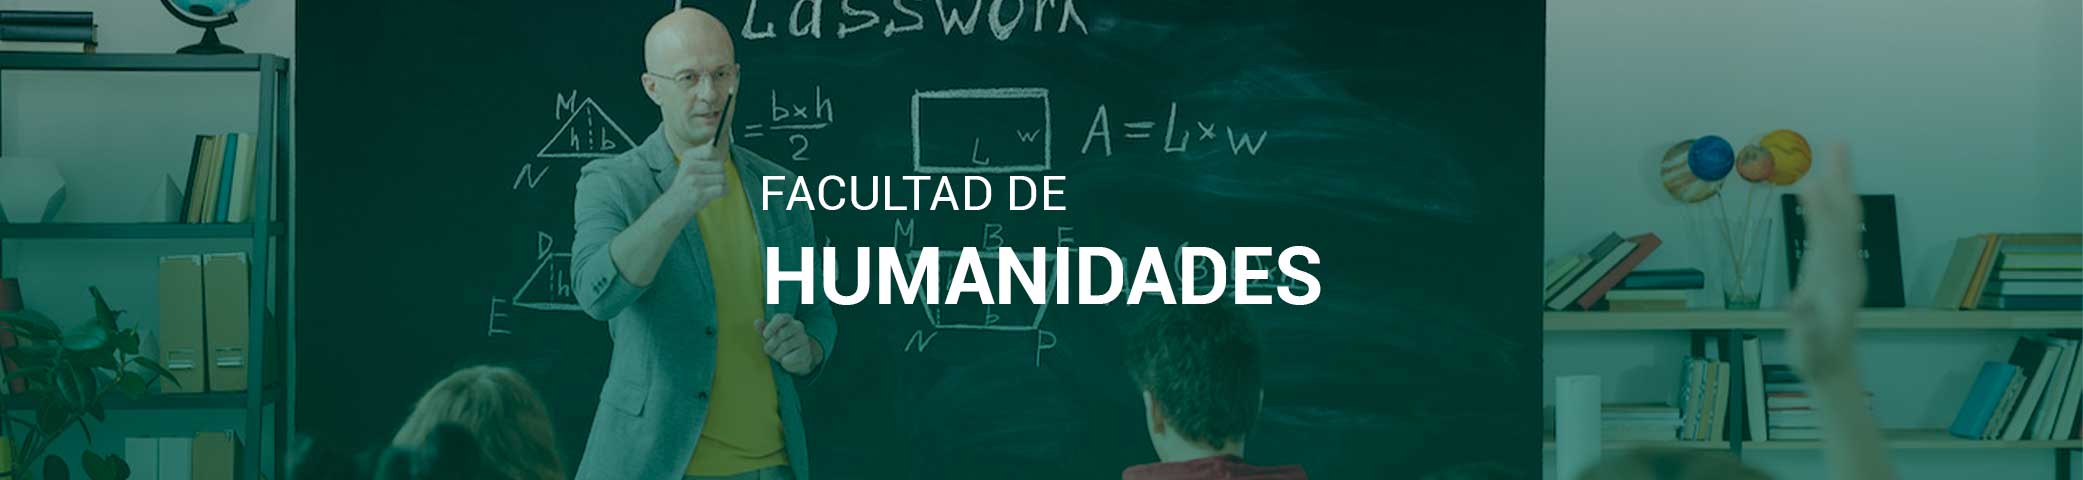 Facultad-humanidades-unad